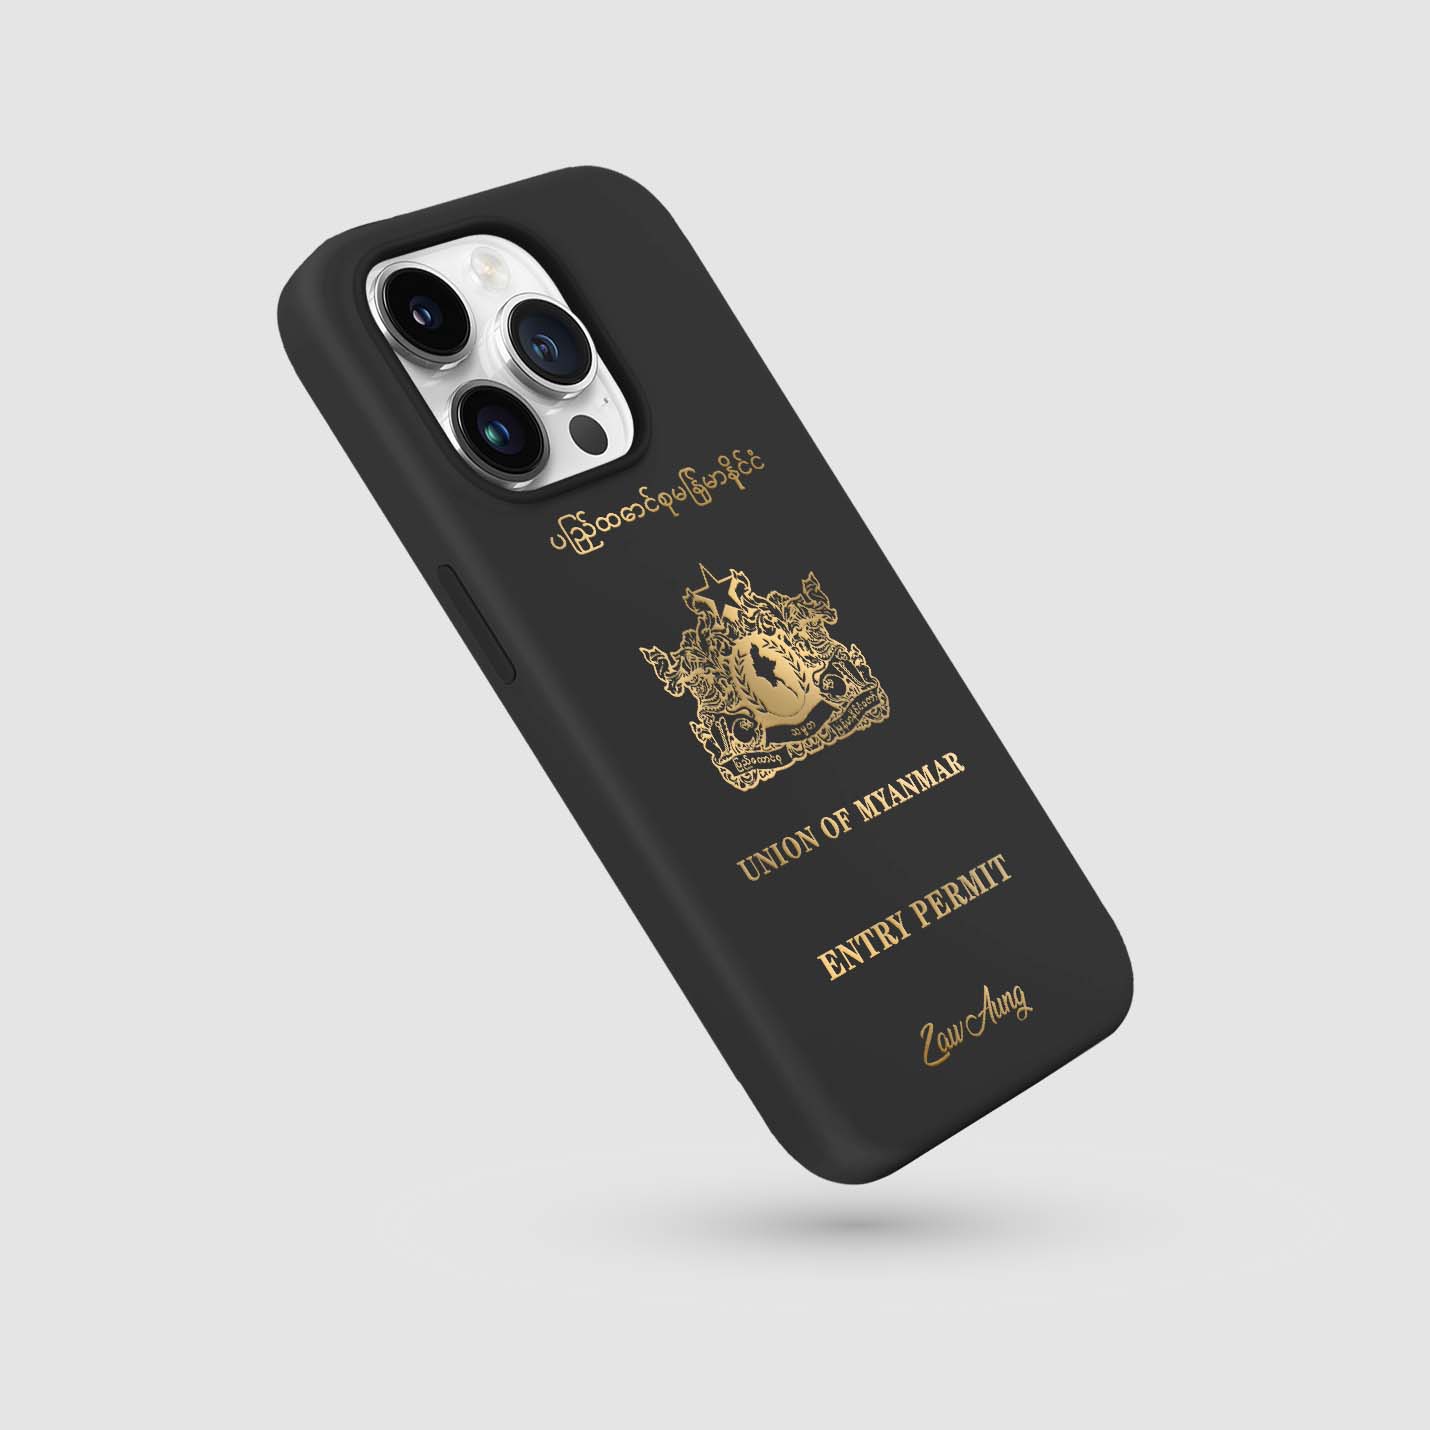 Handyhüllen mit Reisepass - Myanmar (Birma) - 1instaphone